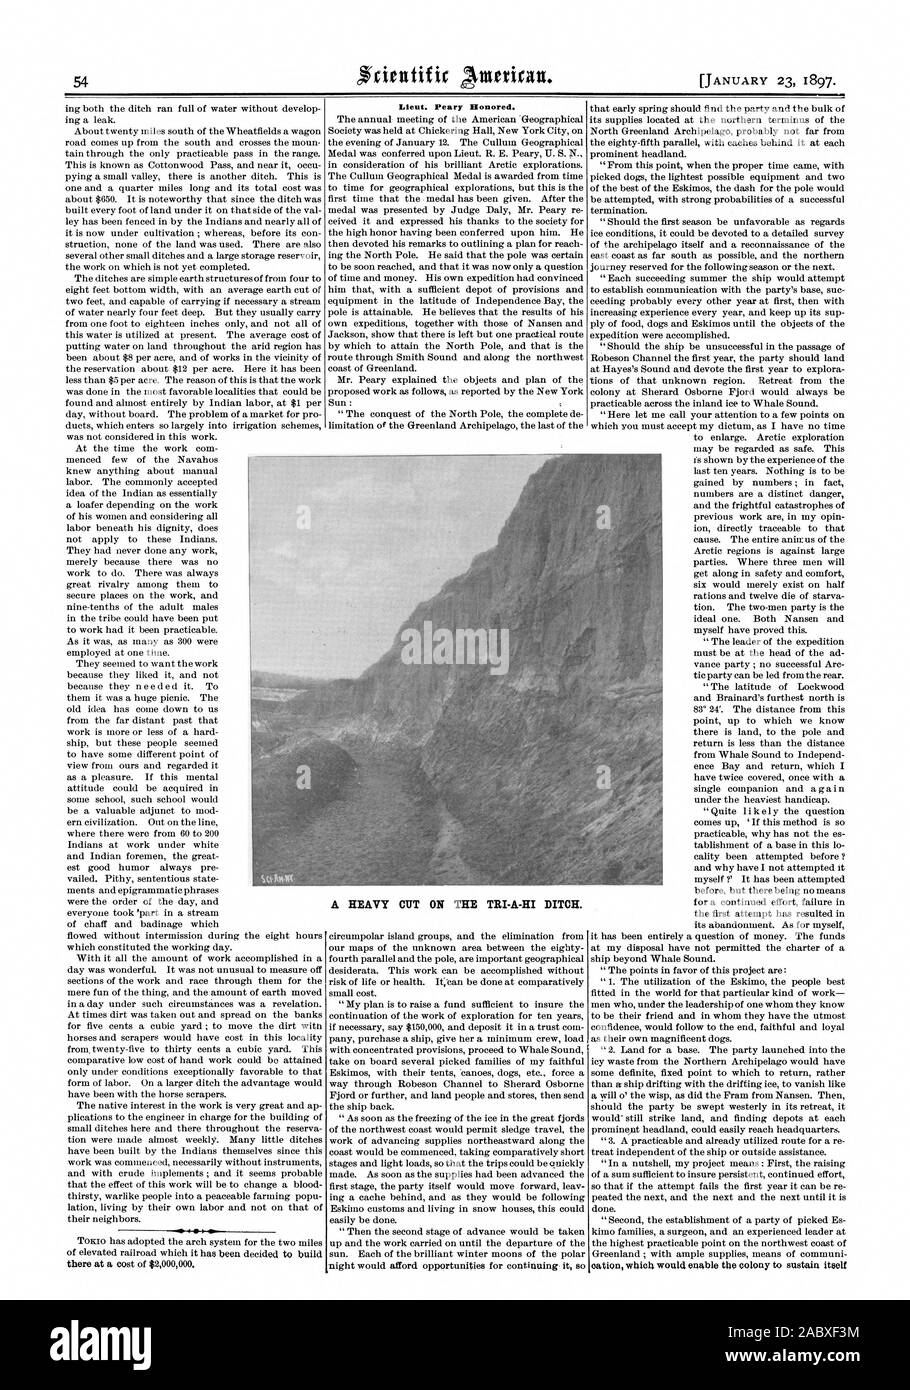 Lieut. Peary geehrt. Ein schwerer SCHNITT AUF DER TRI-A-HI GRABEN., Scientific American, 1897-01-23 Stockfoto